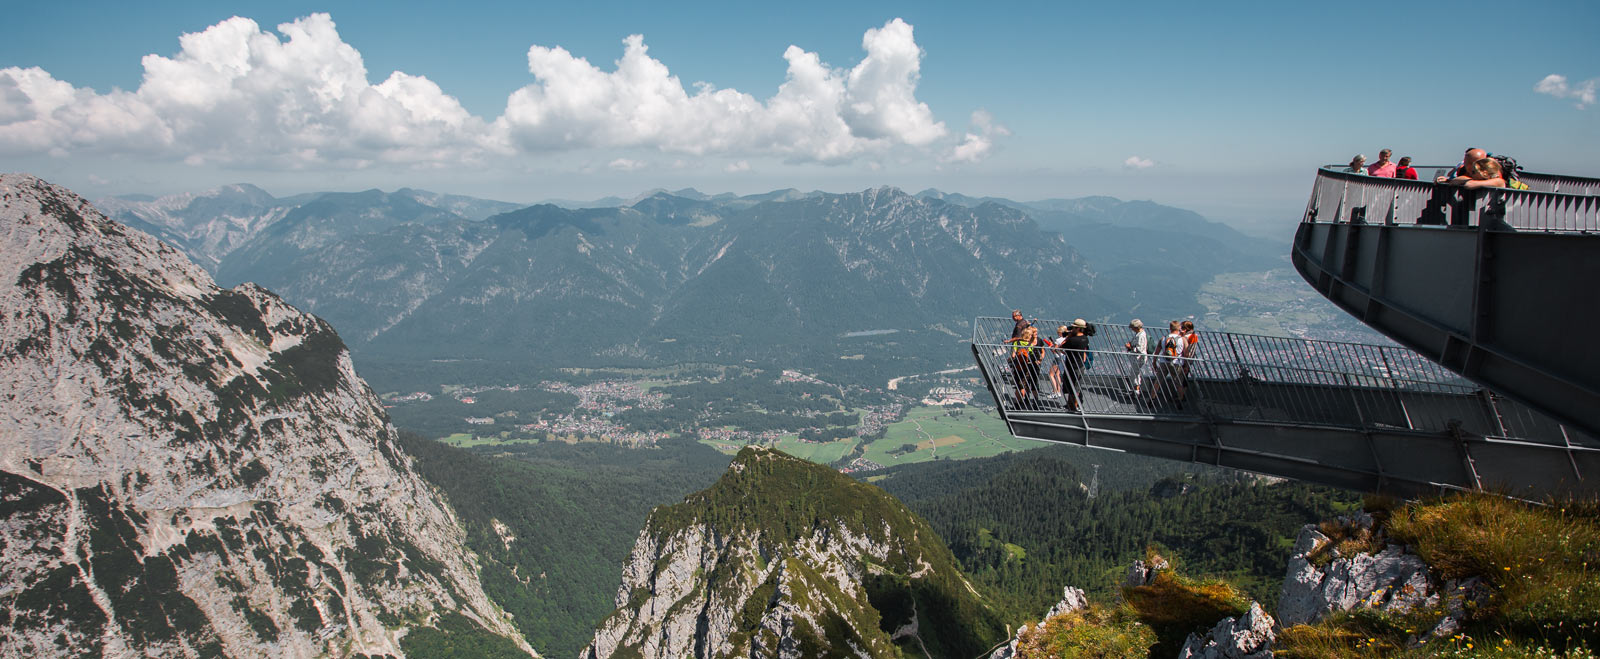 Alpspix - Die x-förmige Aussichtsplattform an der Alpspitze